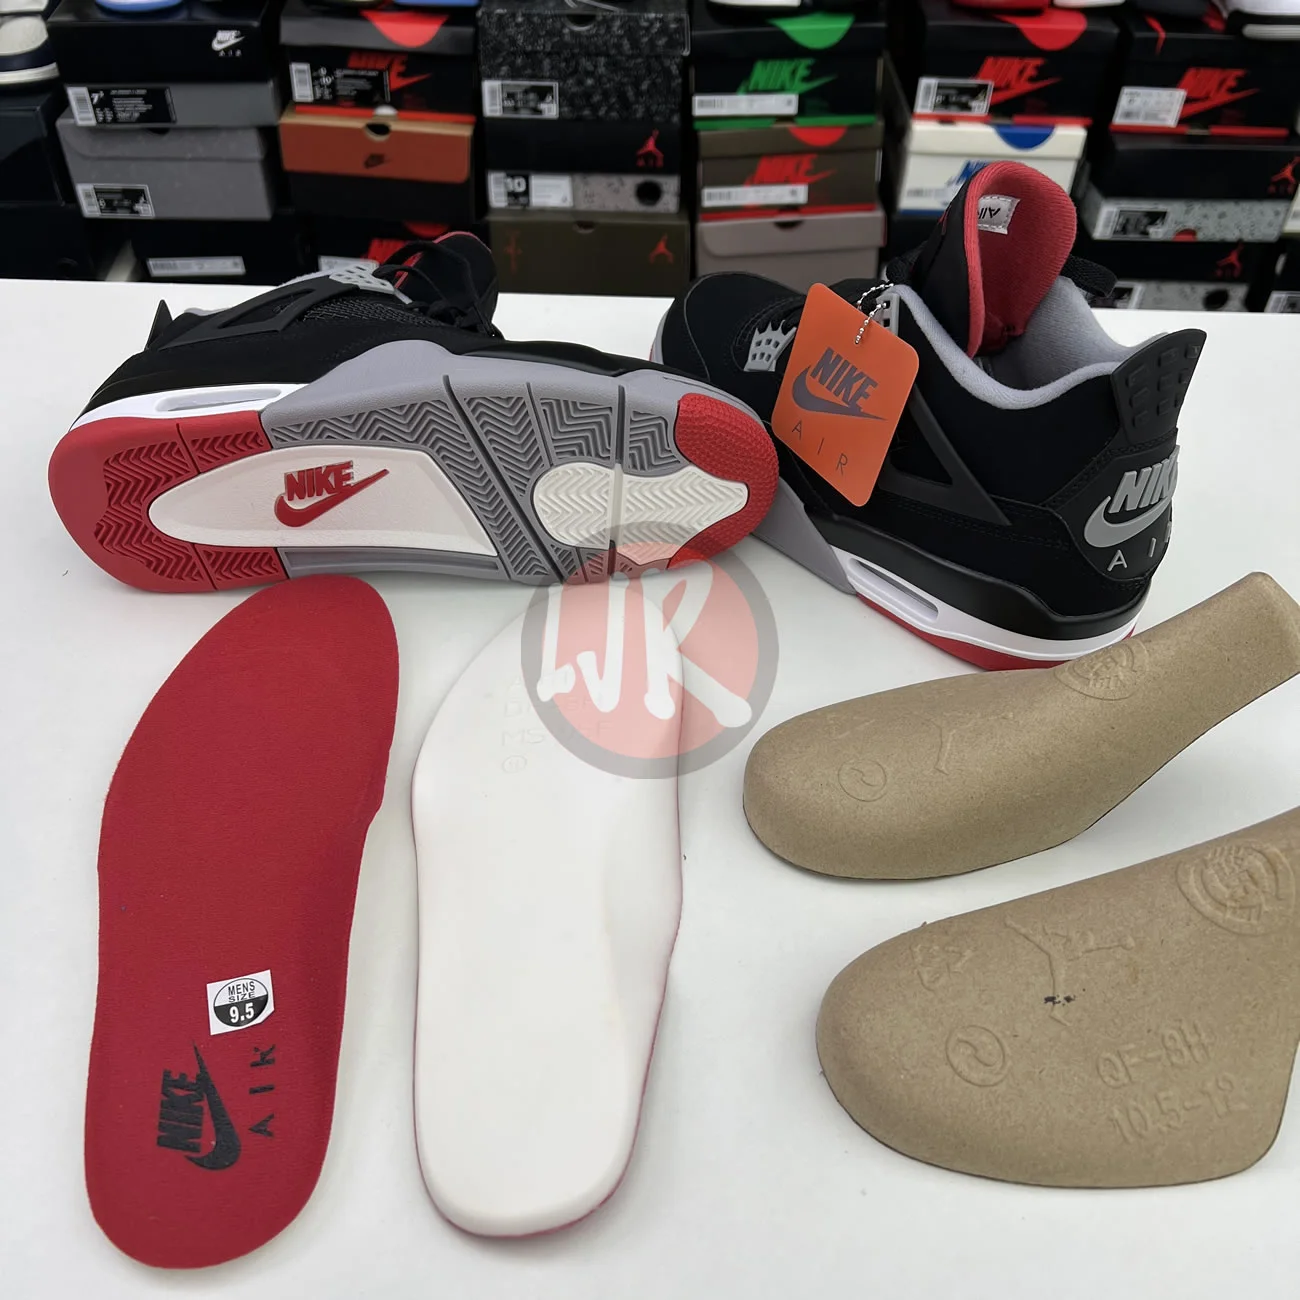 Air Jordan 4 Retro Bred 2019 308497 060 Ljr Sneakers (5) - bc-ljr.com